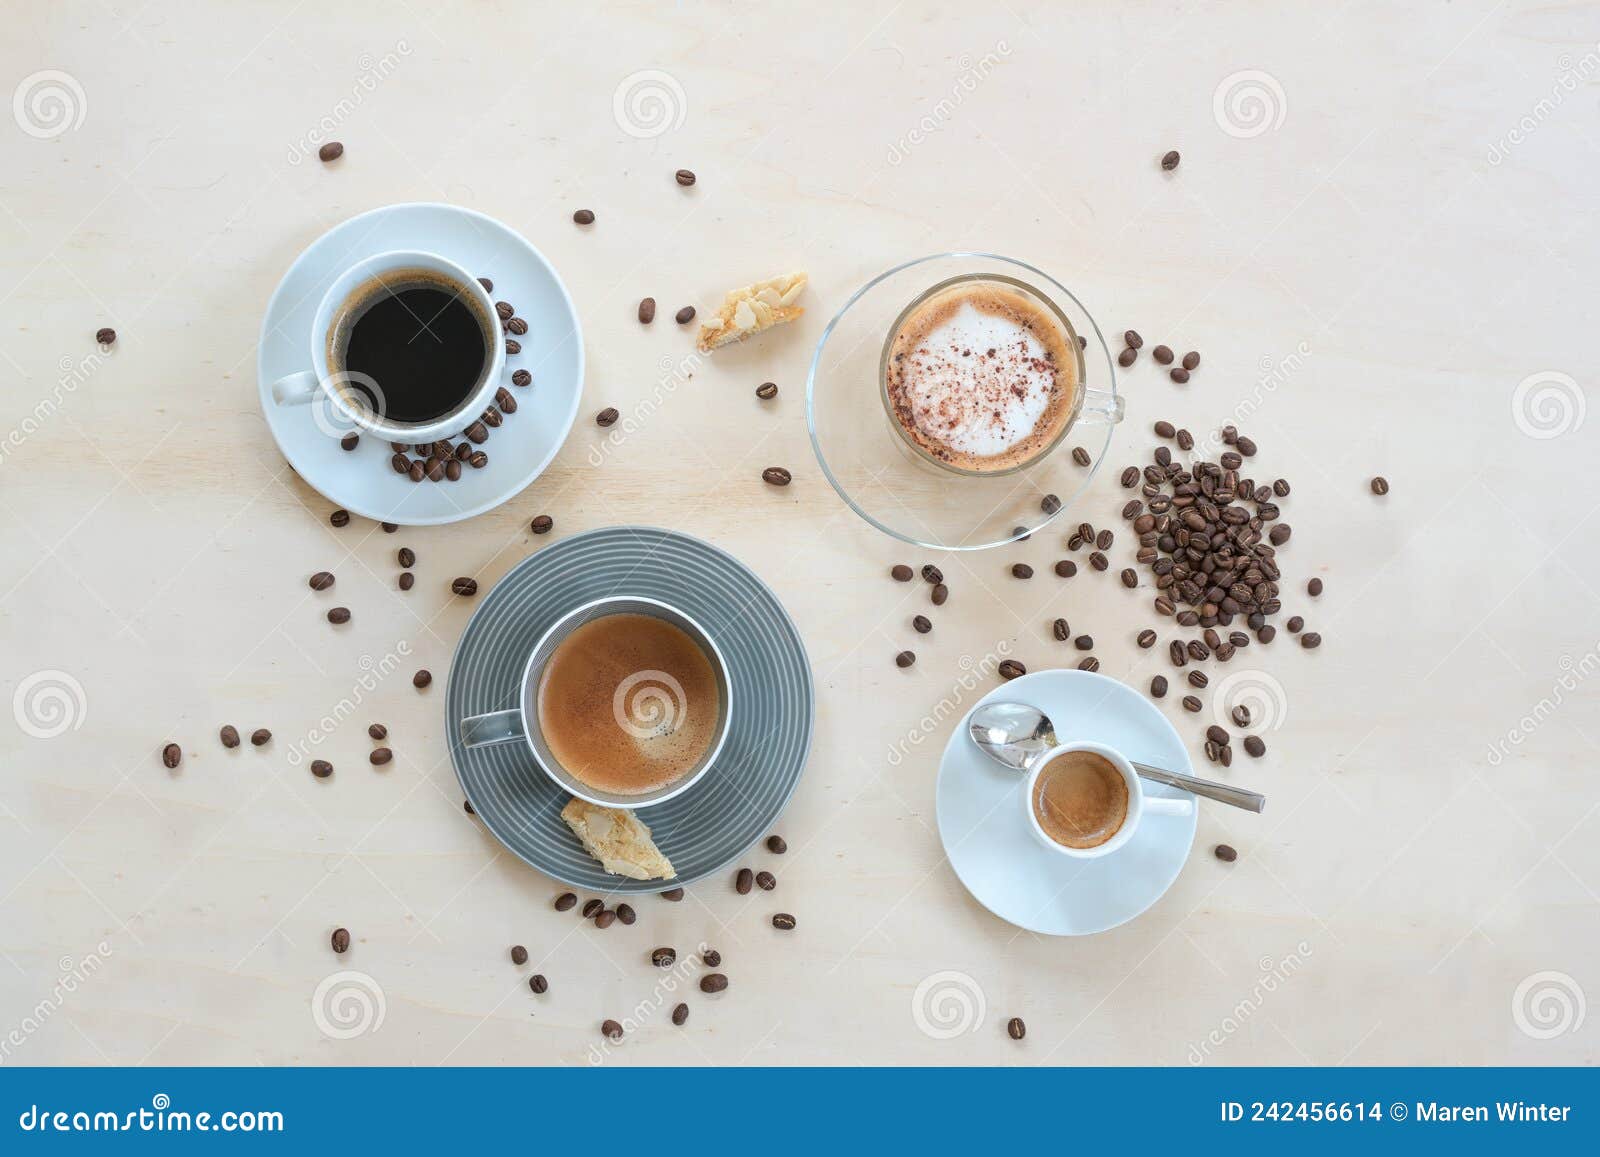 754 Coffee Lungo Stock Photos - Free & Royalty-Free Stock Photos